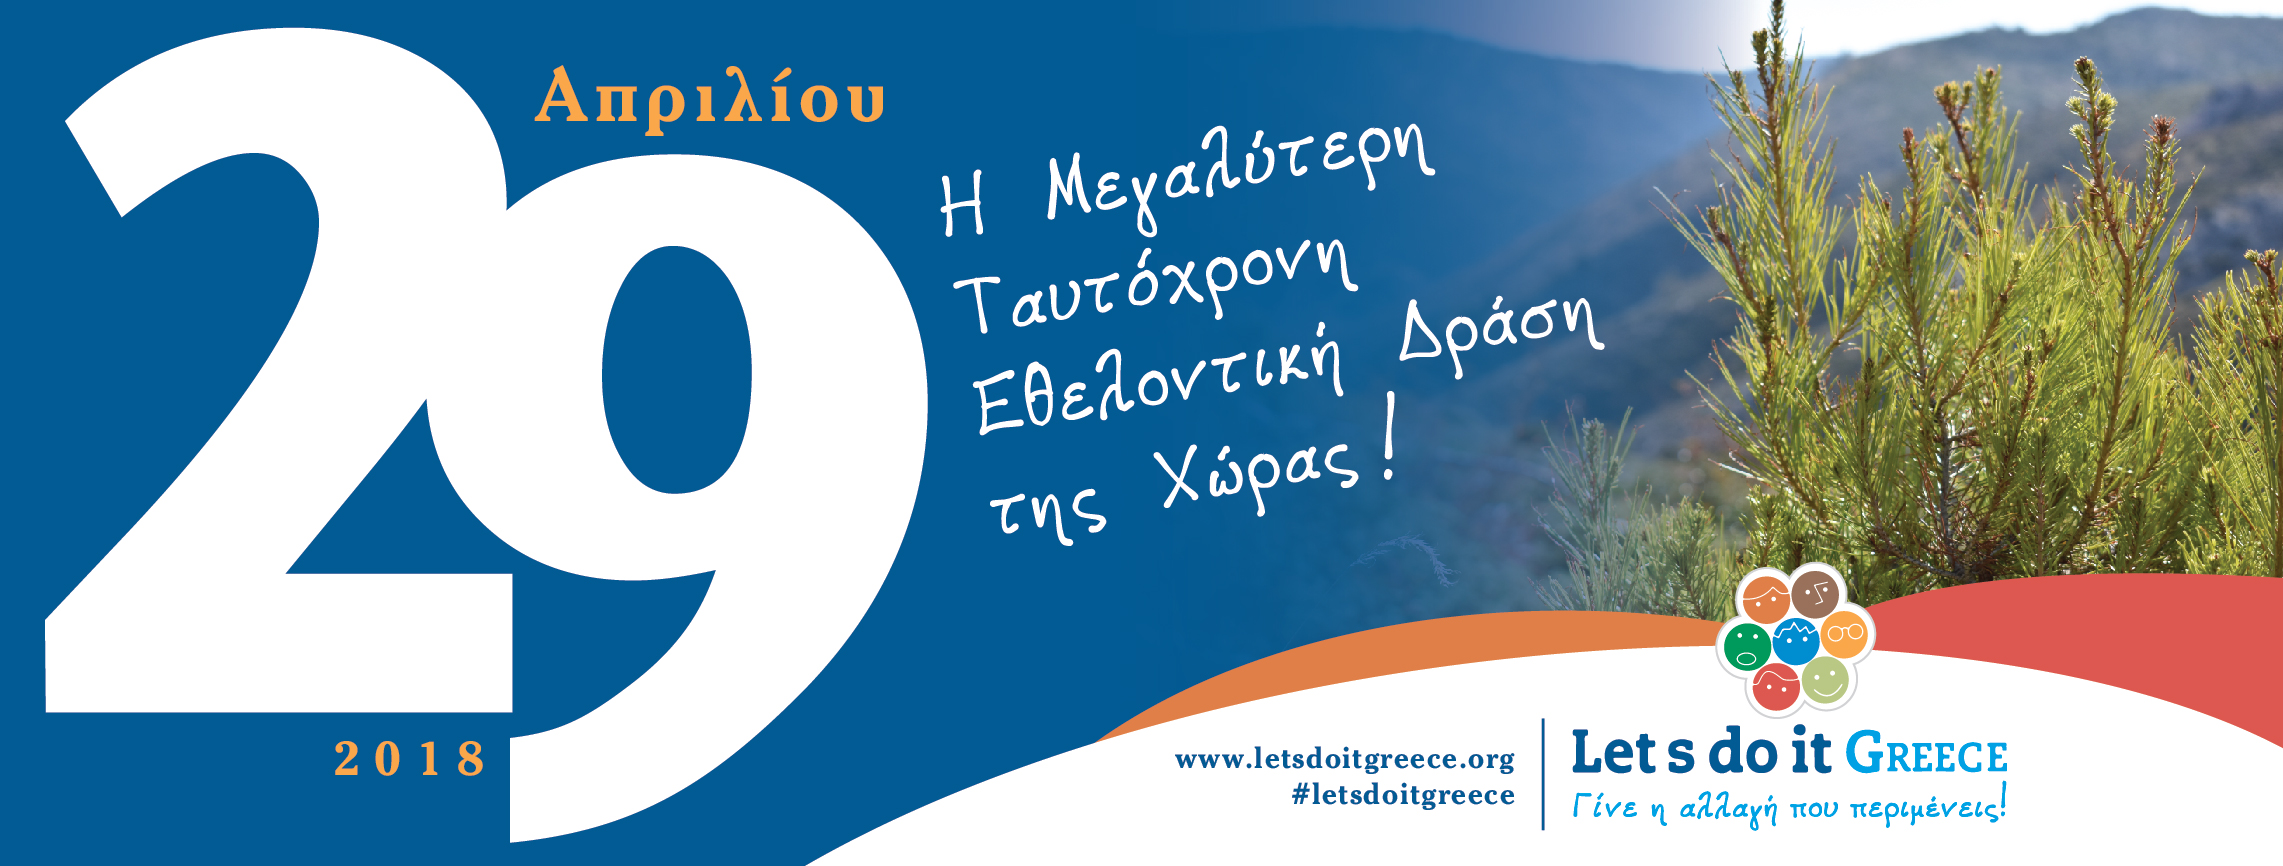 Αποτέλεσμα εικόνας για Let's do it greece δράσεις εθελοντισμού 2018